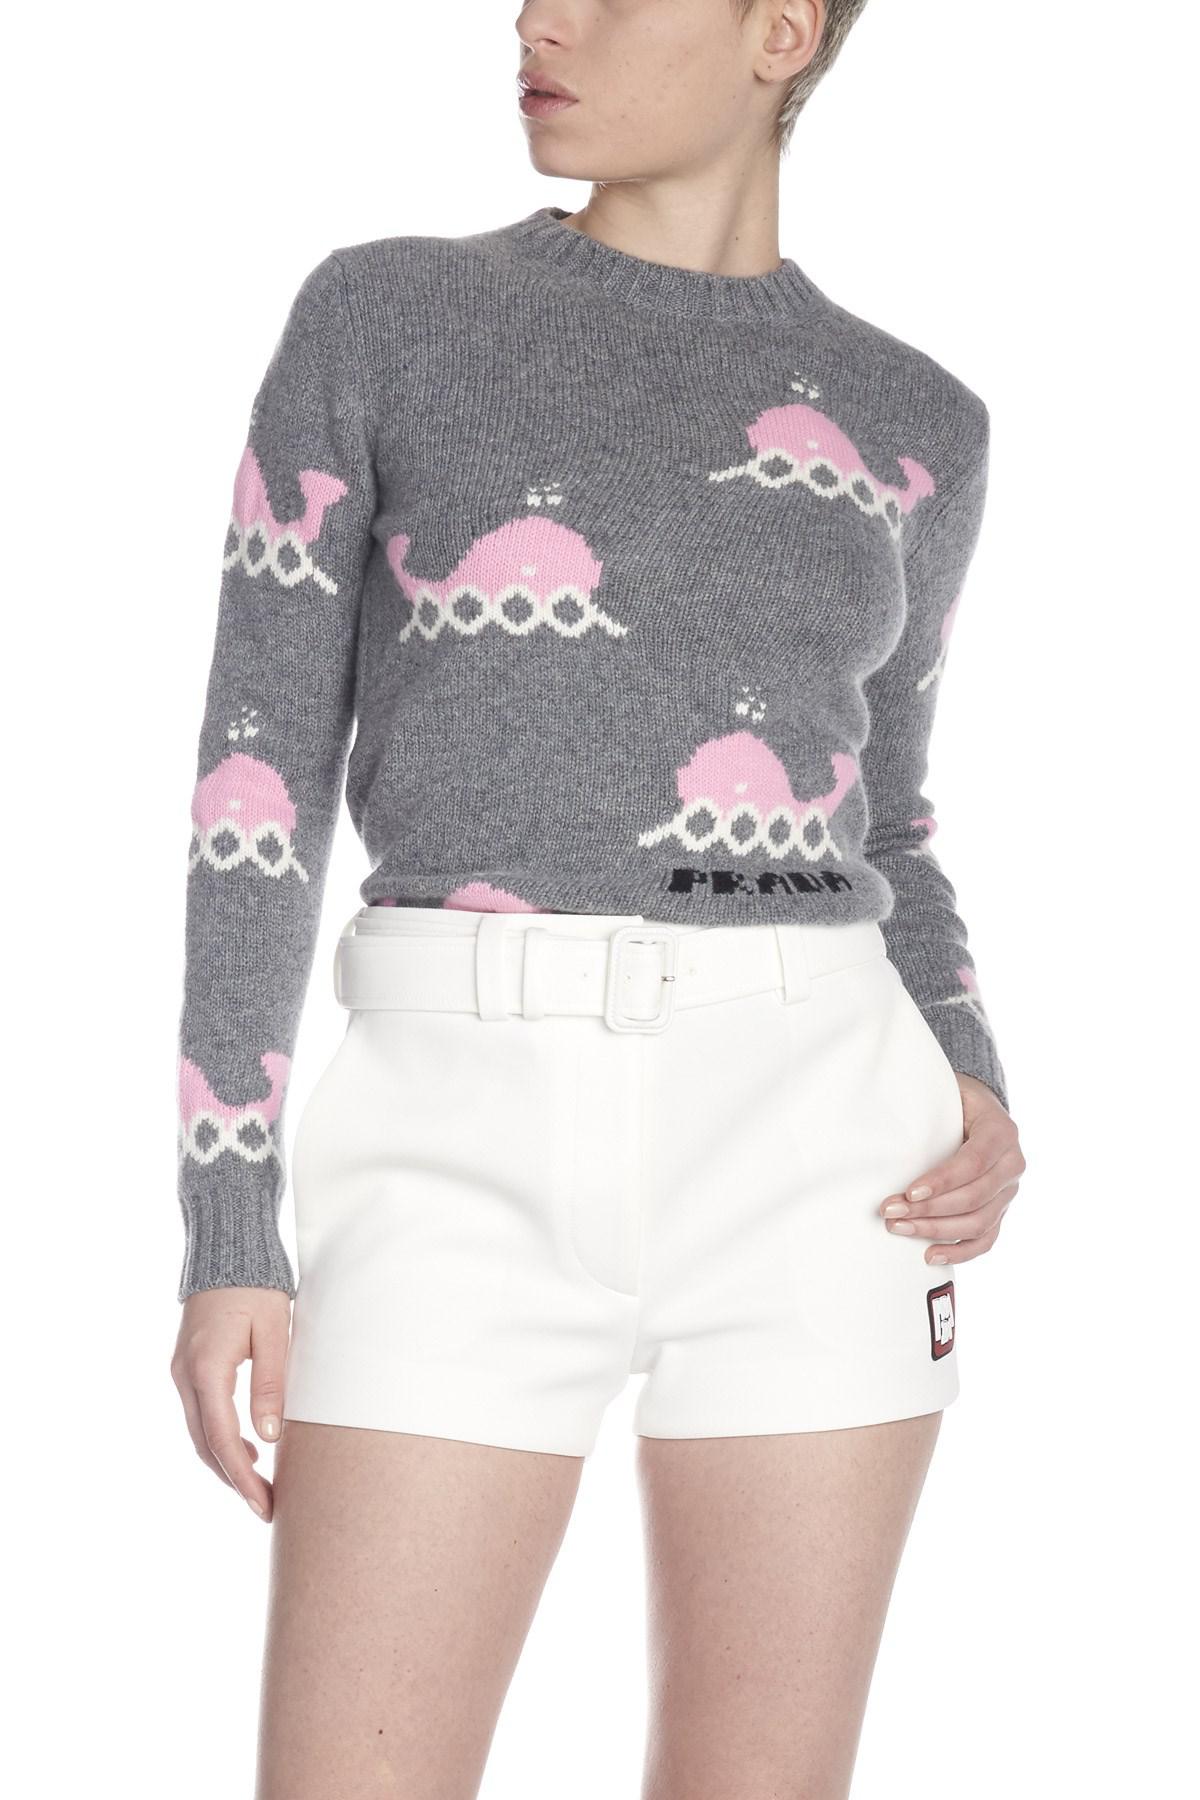 prada whale sweater, OFF 79%,www 